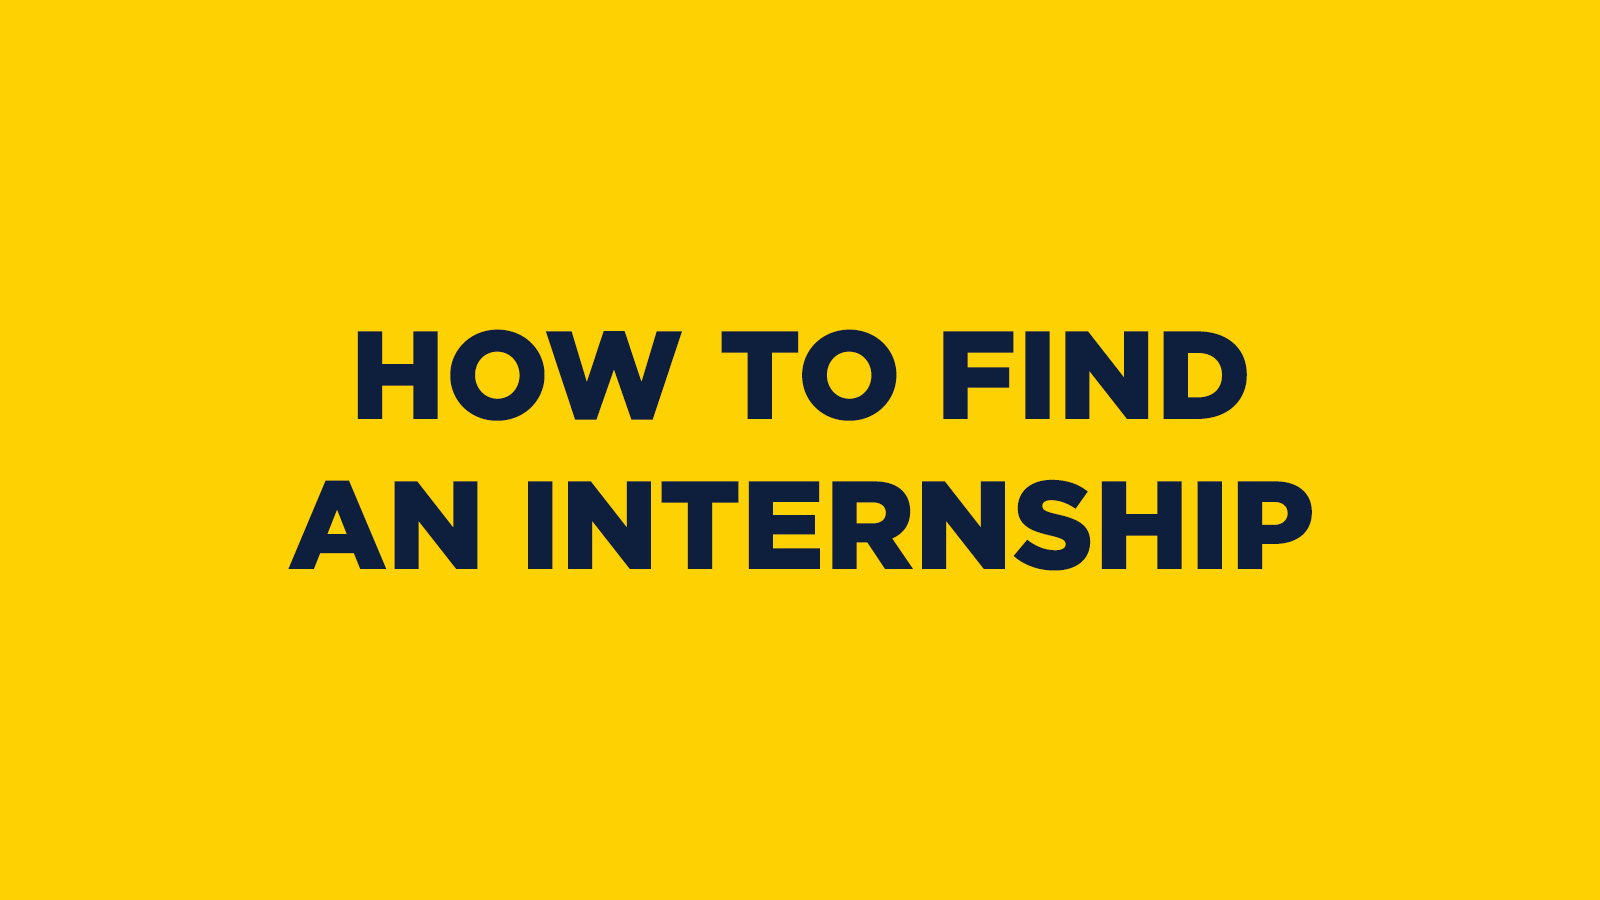 How to Find an Internship